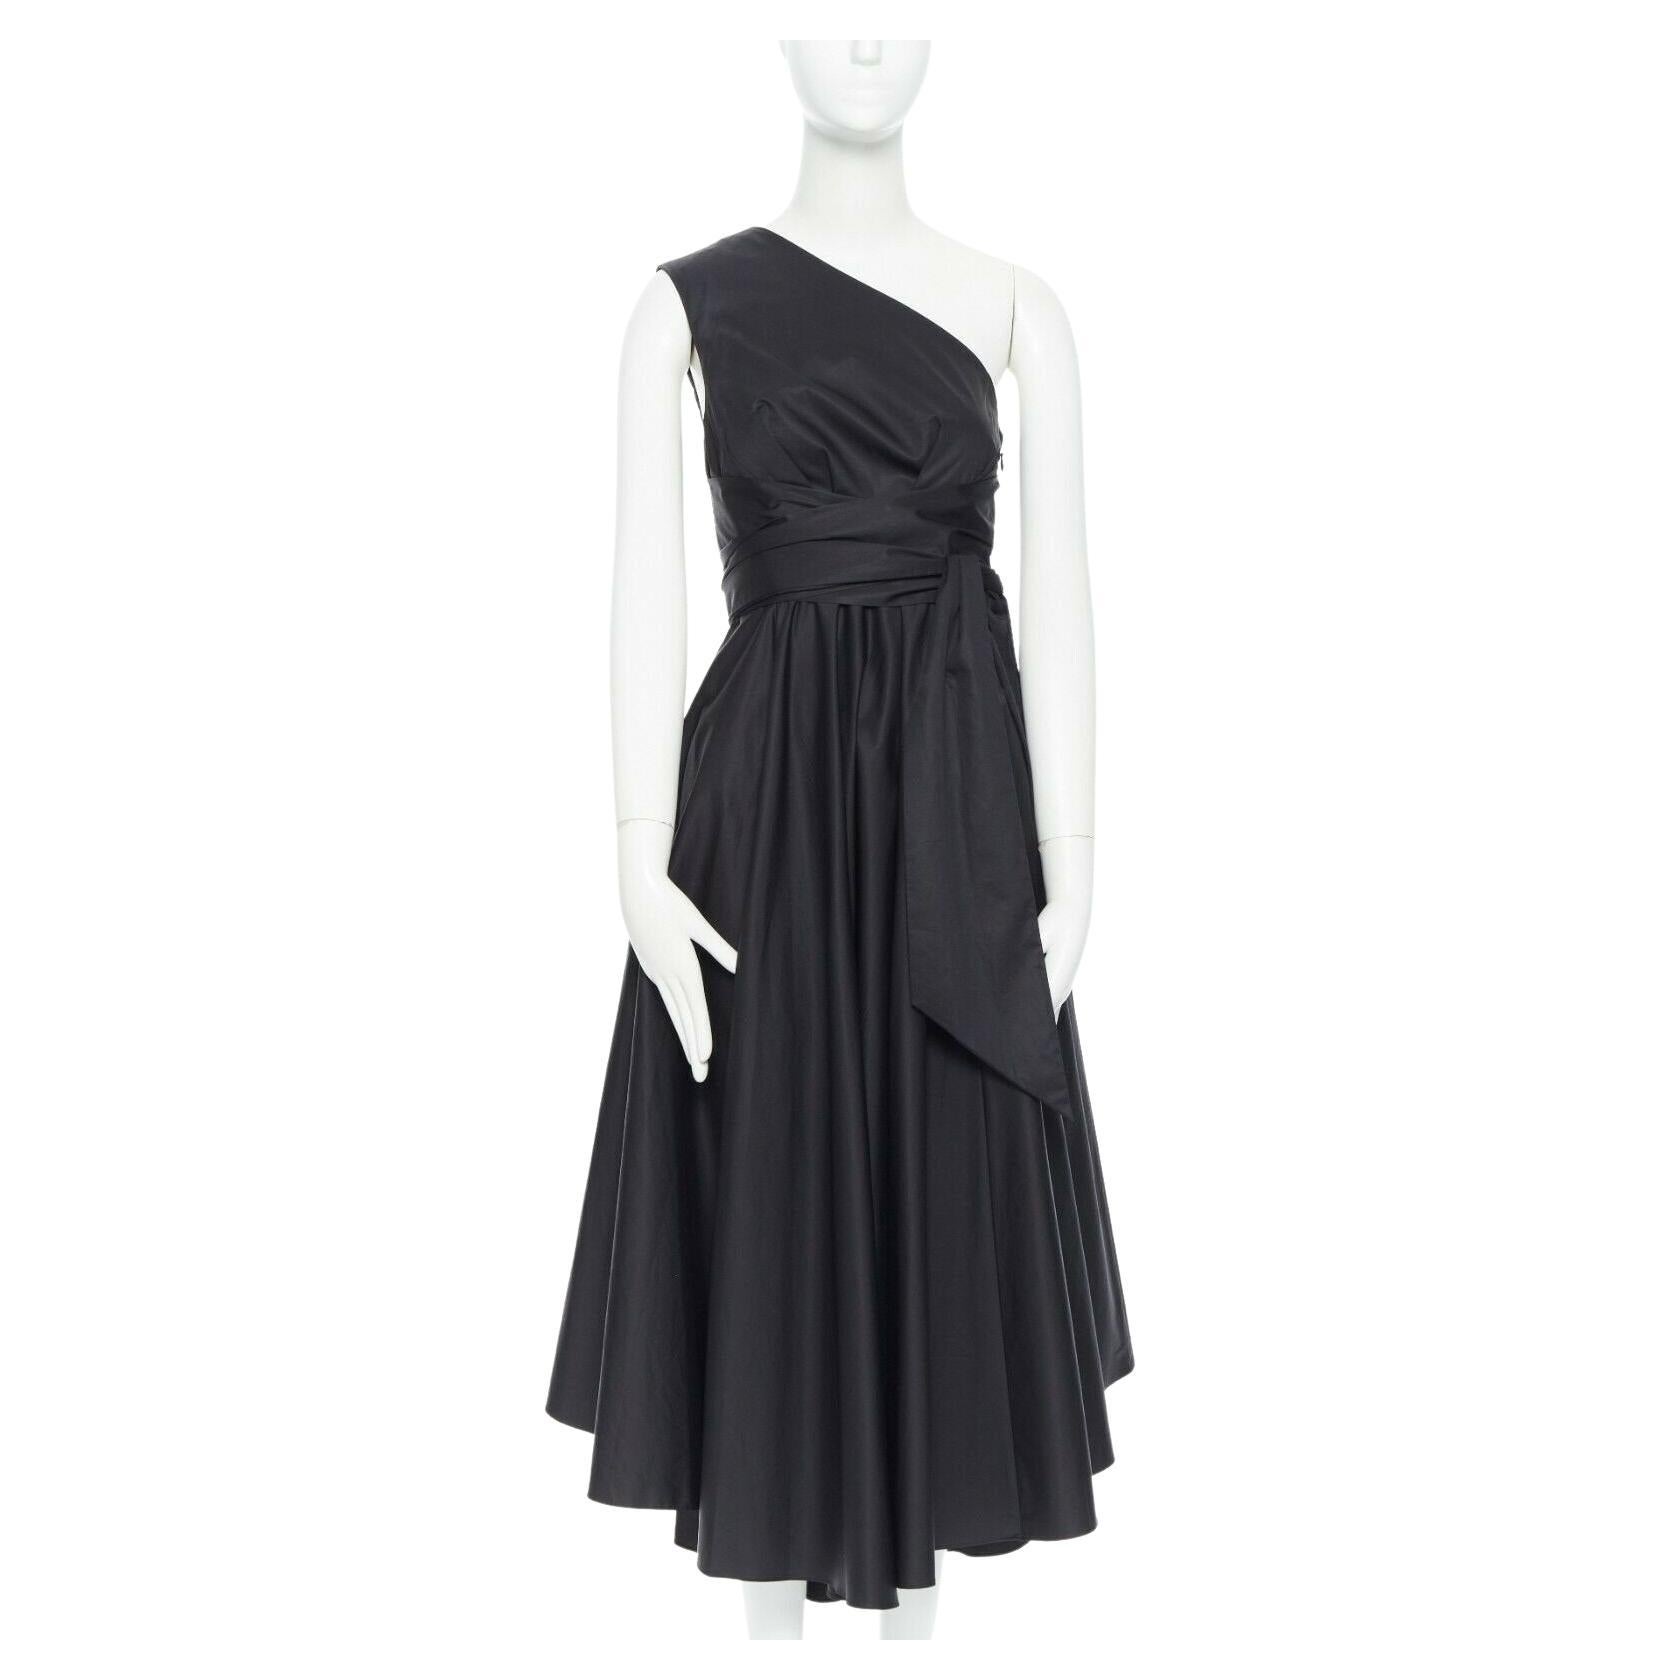 Tibi Pleated Dress - For Sale on 1stDibs